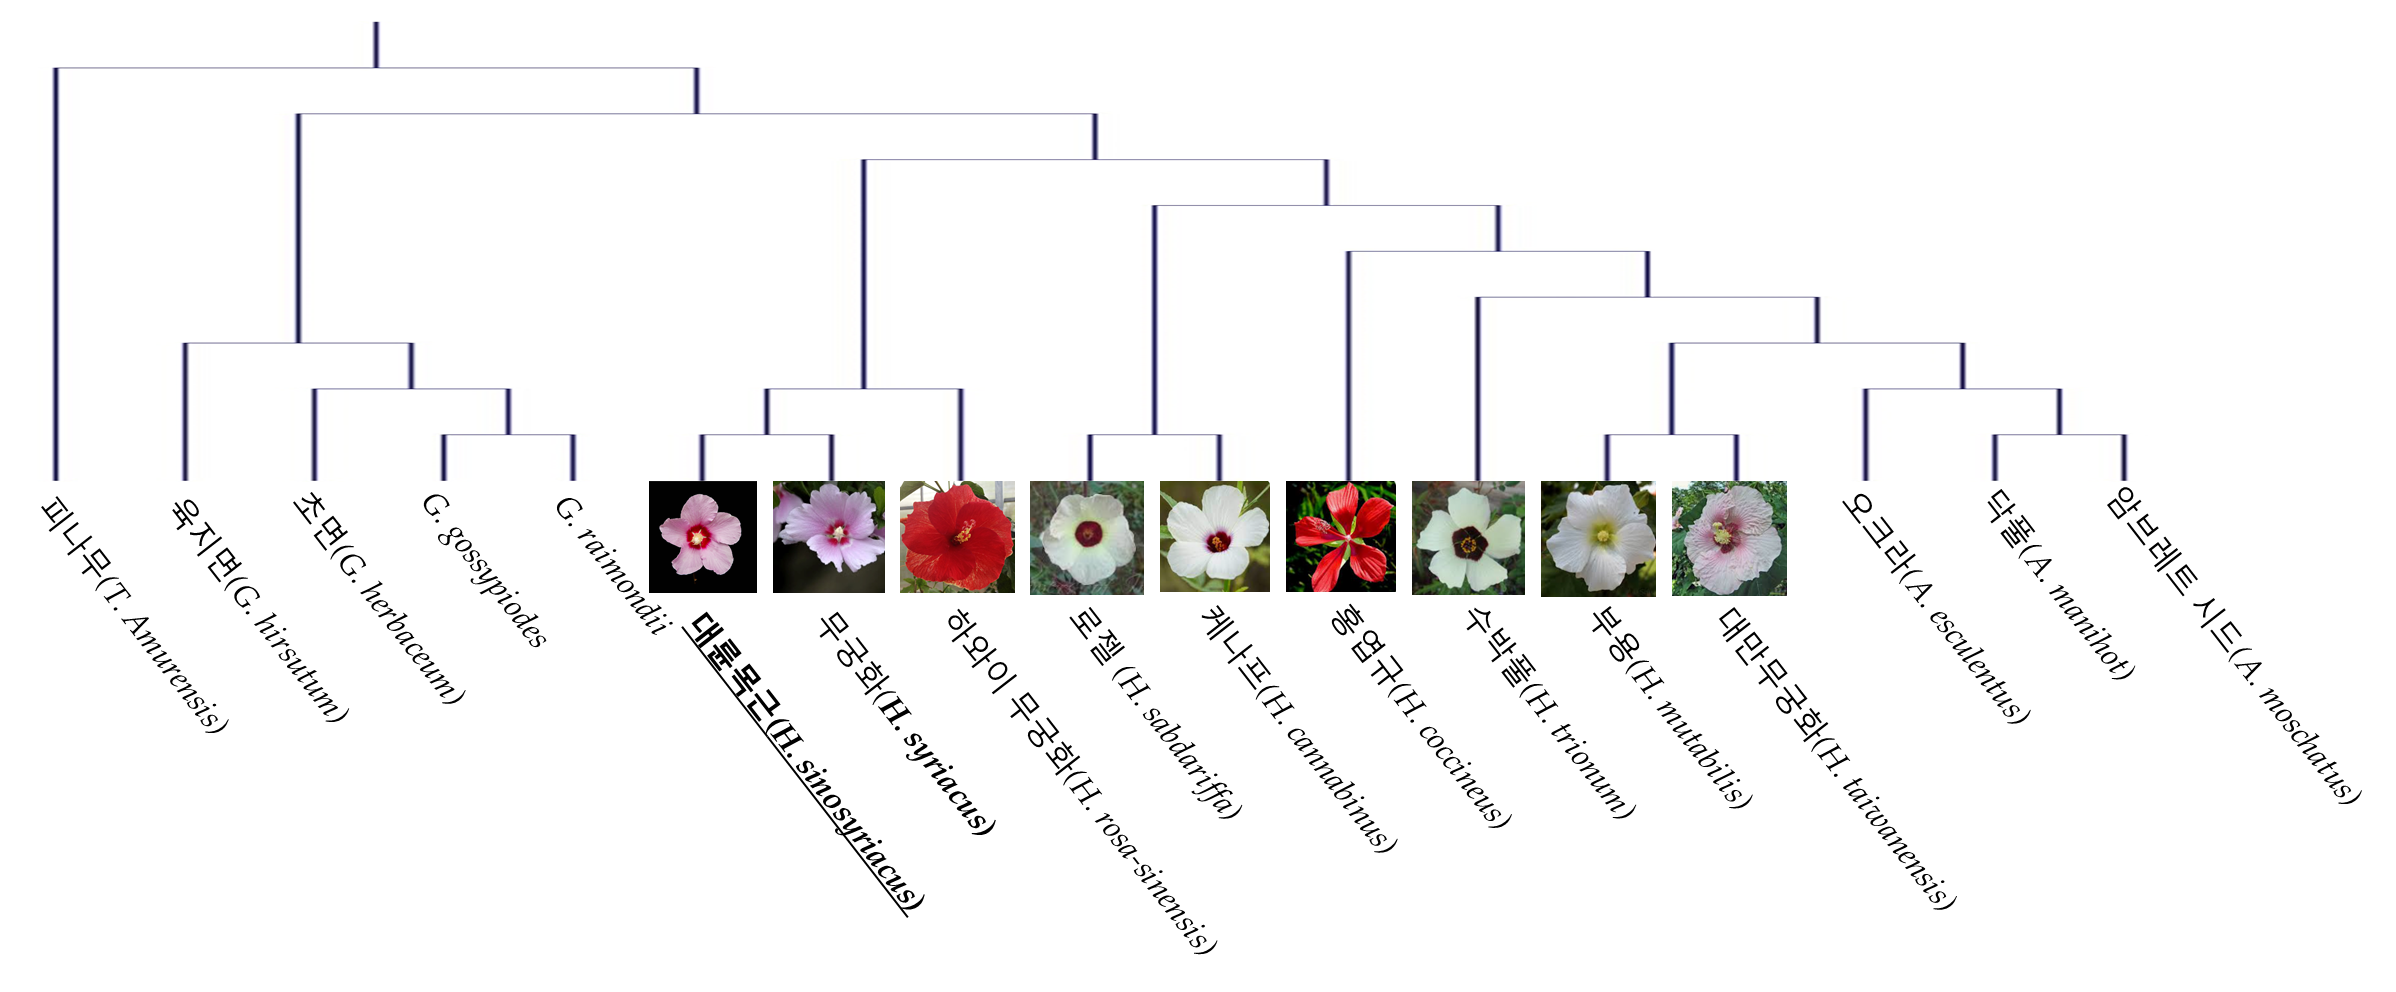 무궁화 속 식물 대륜목근의 품종 ‘서봉’, 엽록체 유전체 지도 완전 해독 이미지2